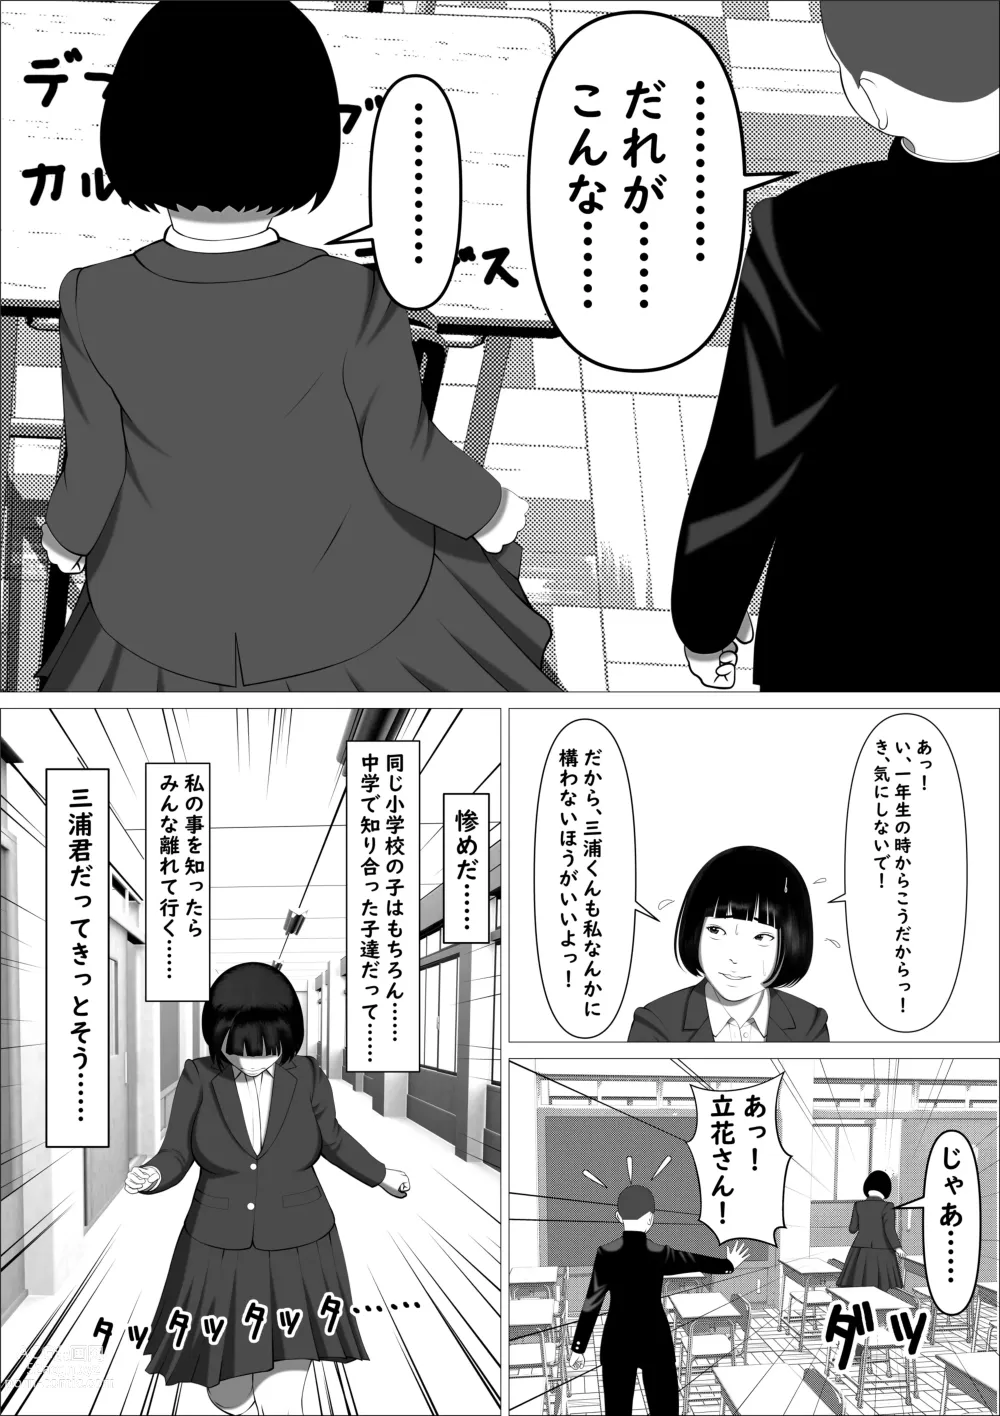 Page 9 of doujinshi Kasumi Shikijou no Miko